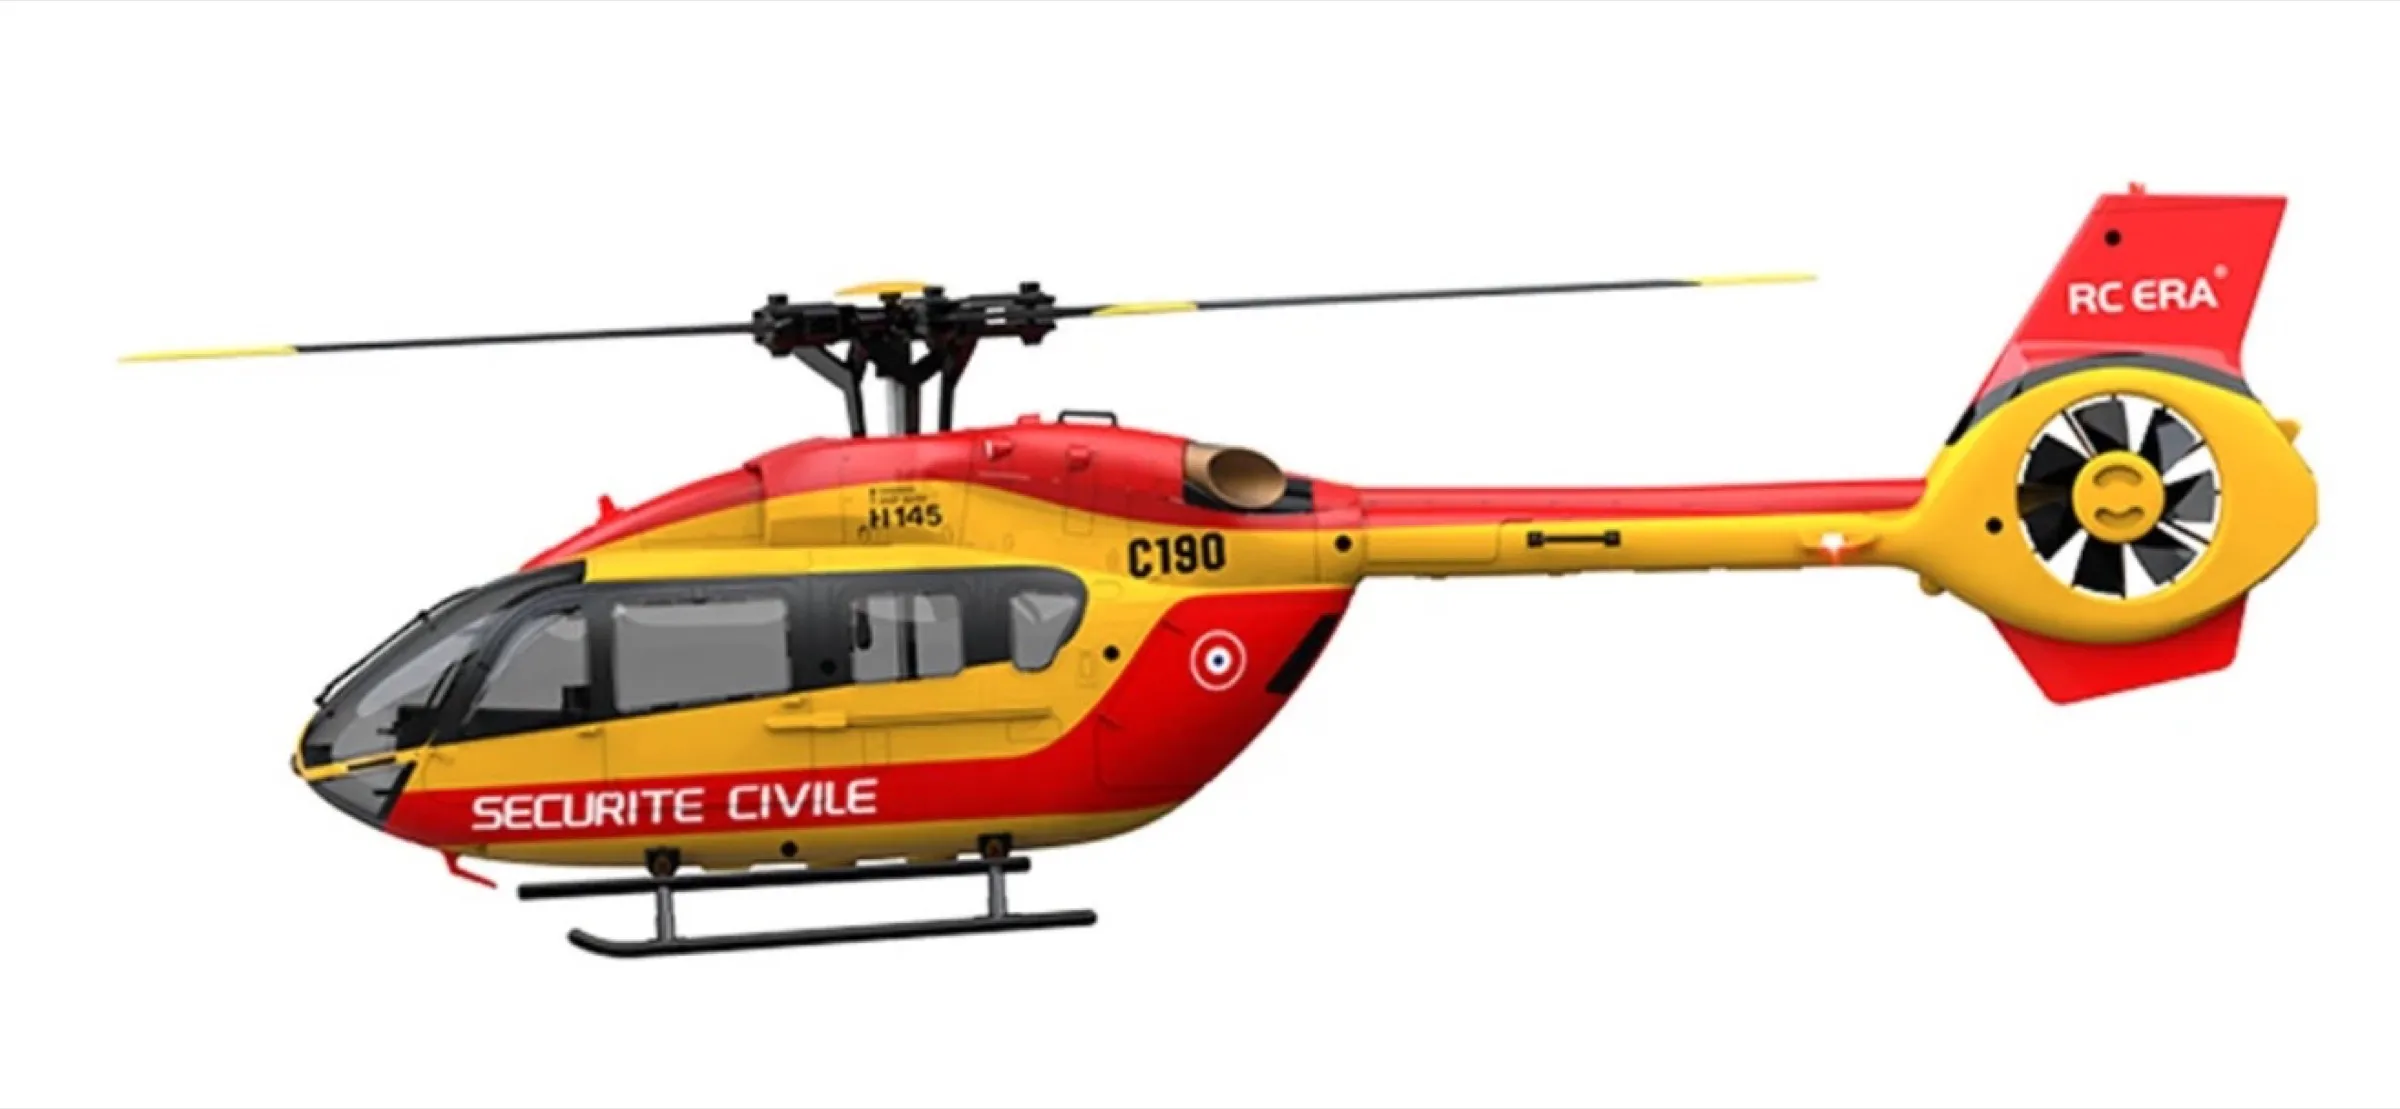 RC ERA C190, elicottero telecomandato per appassionati in sconto